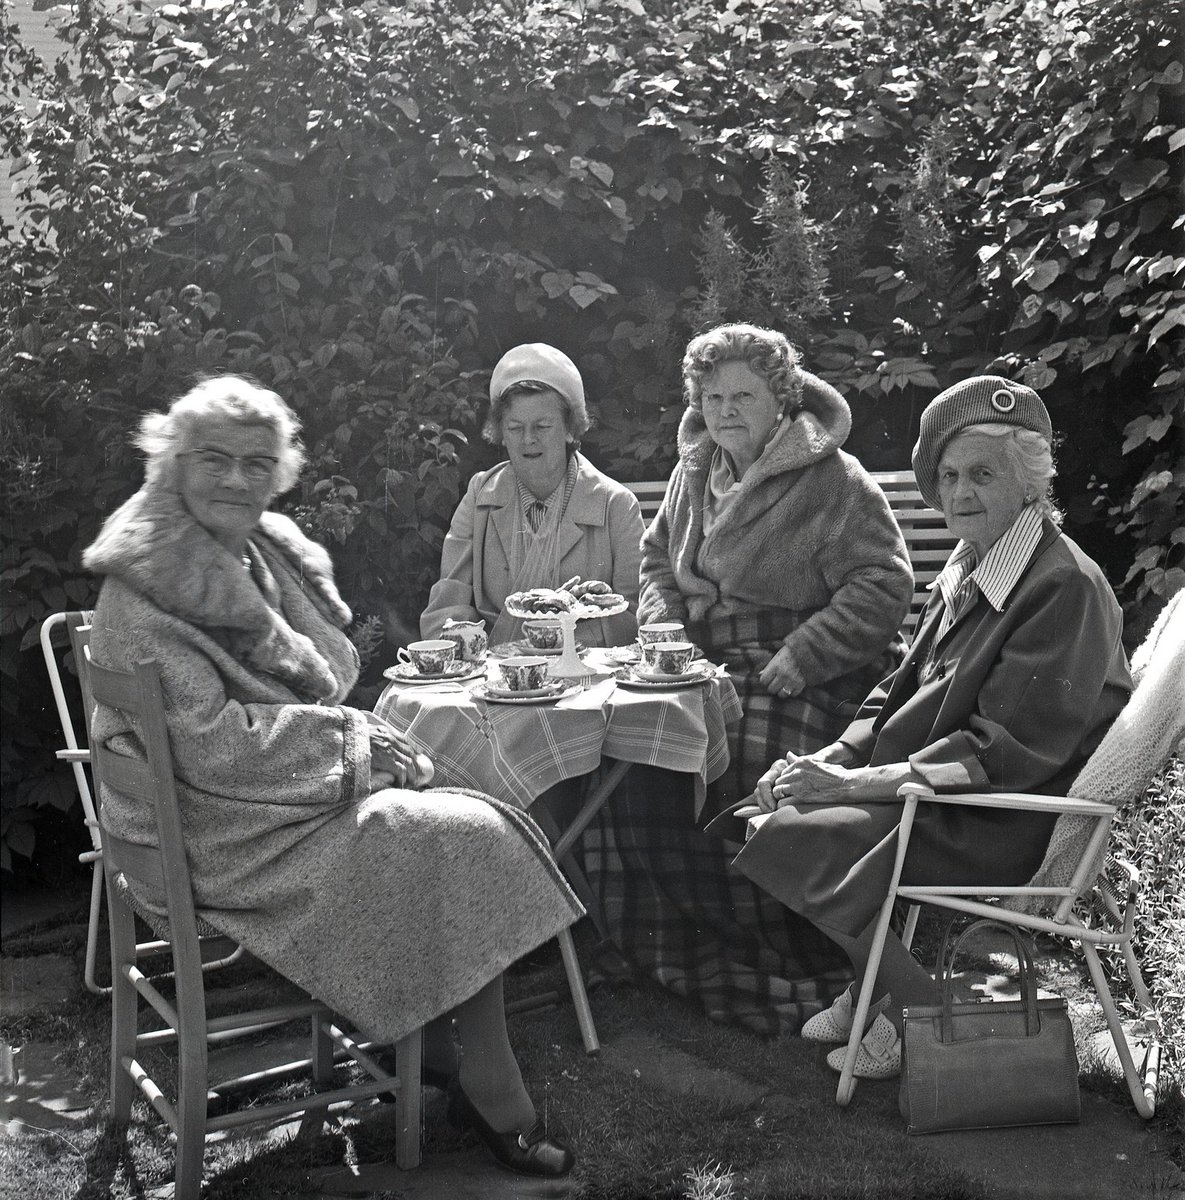 Vesteveien 35, Haugesund
4 damer, kaffe og kaker i hagen